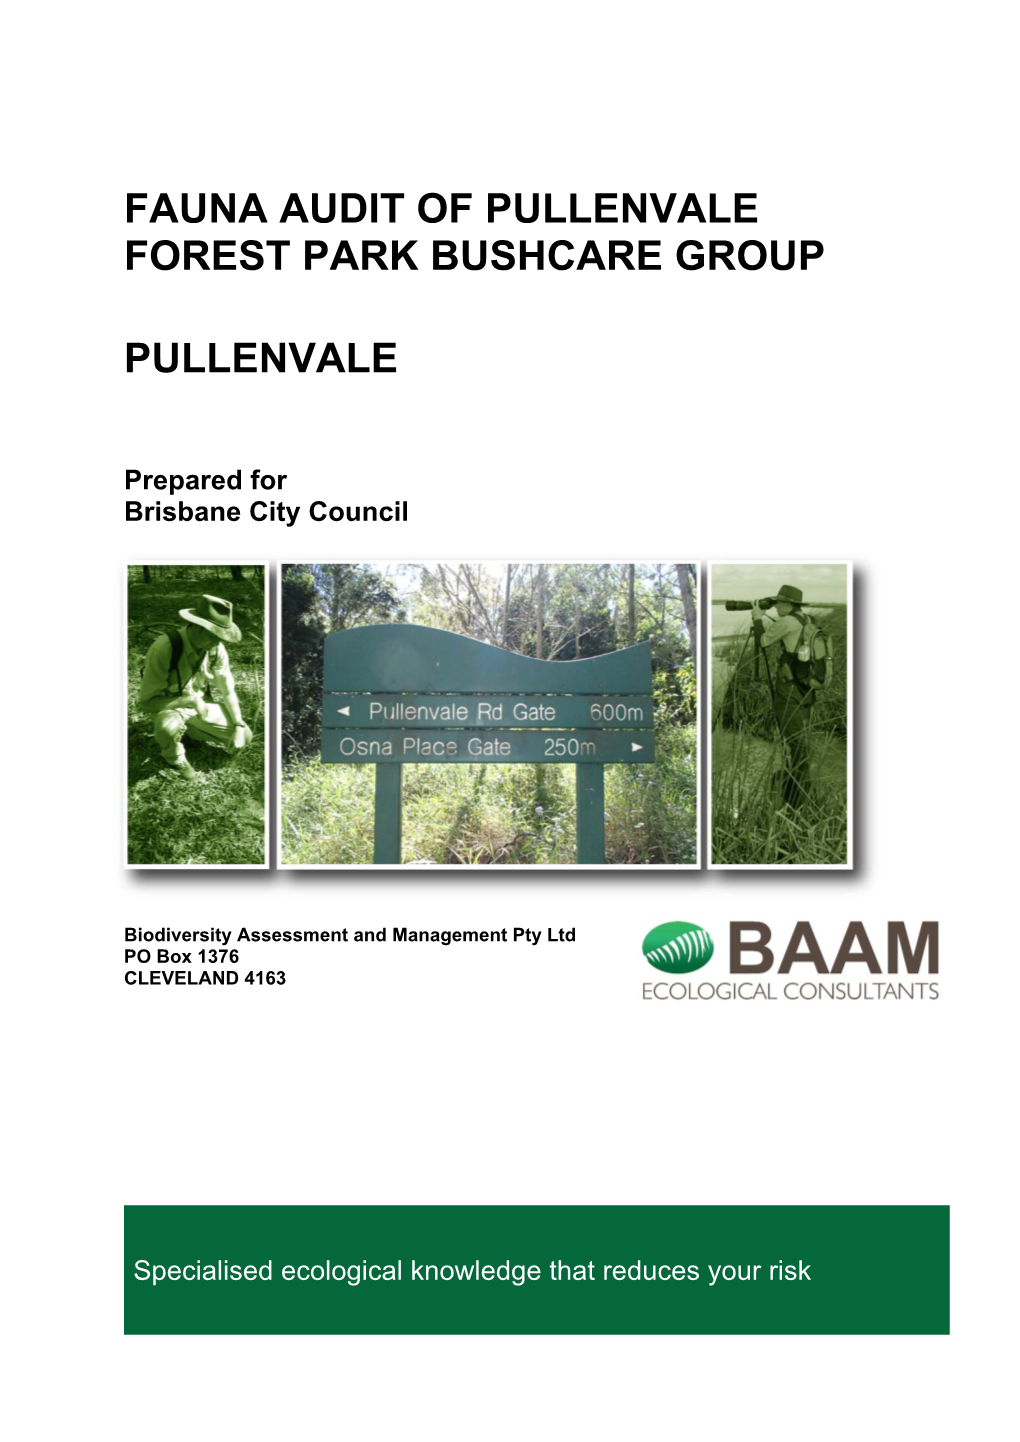 Pullenvale Forest Park Bushcare Group Fauna Audit Report